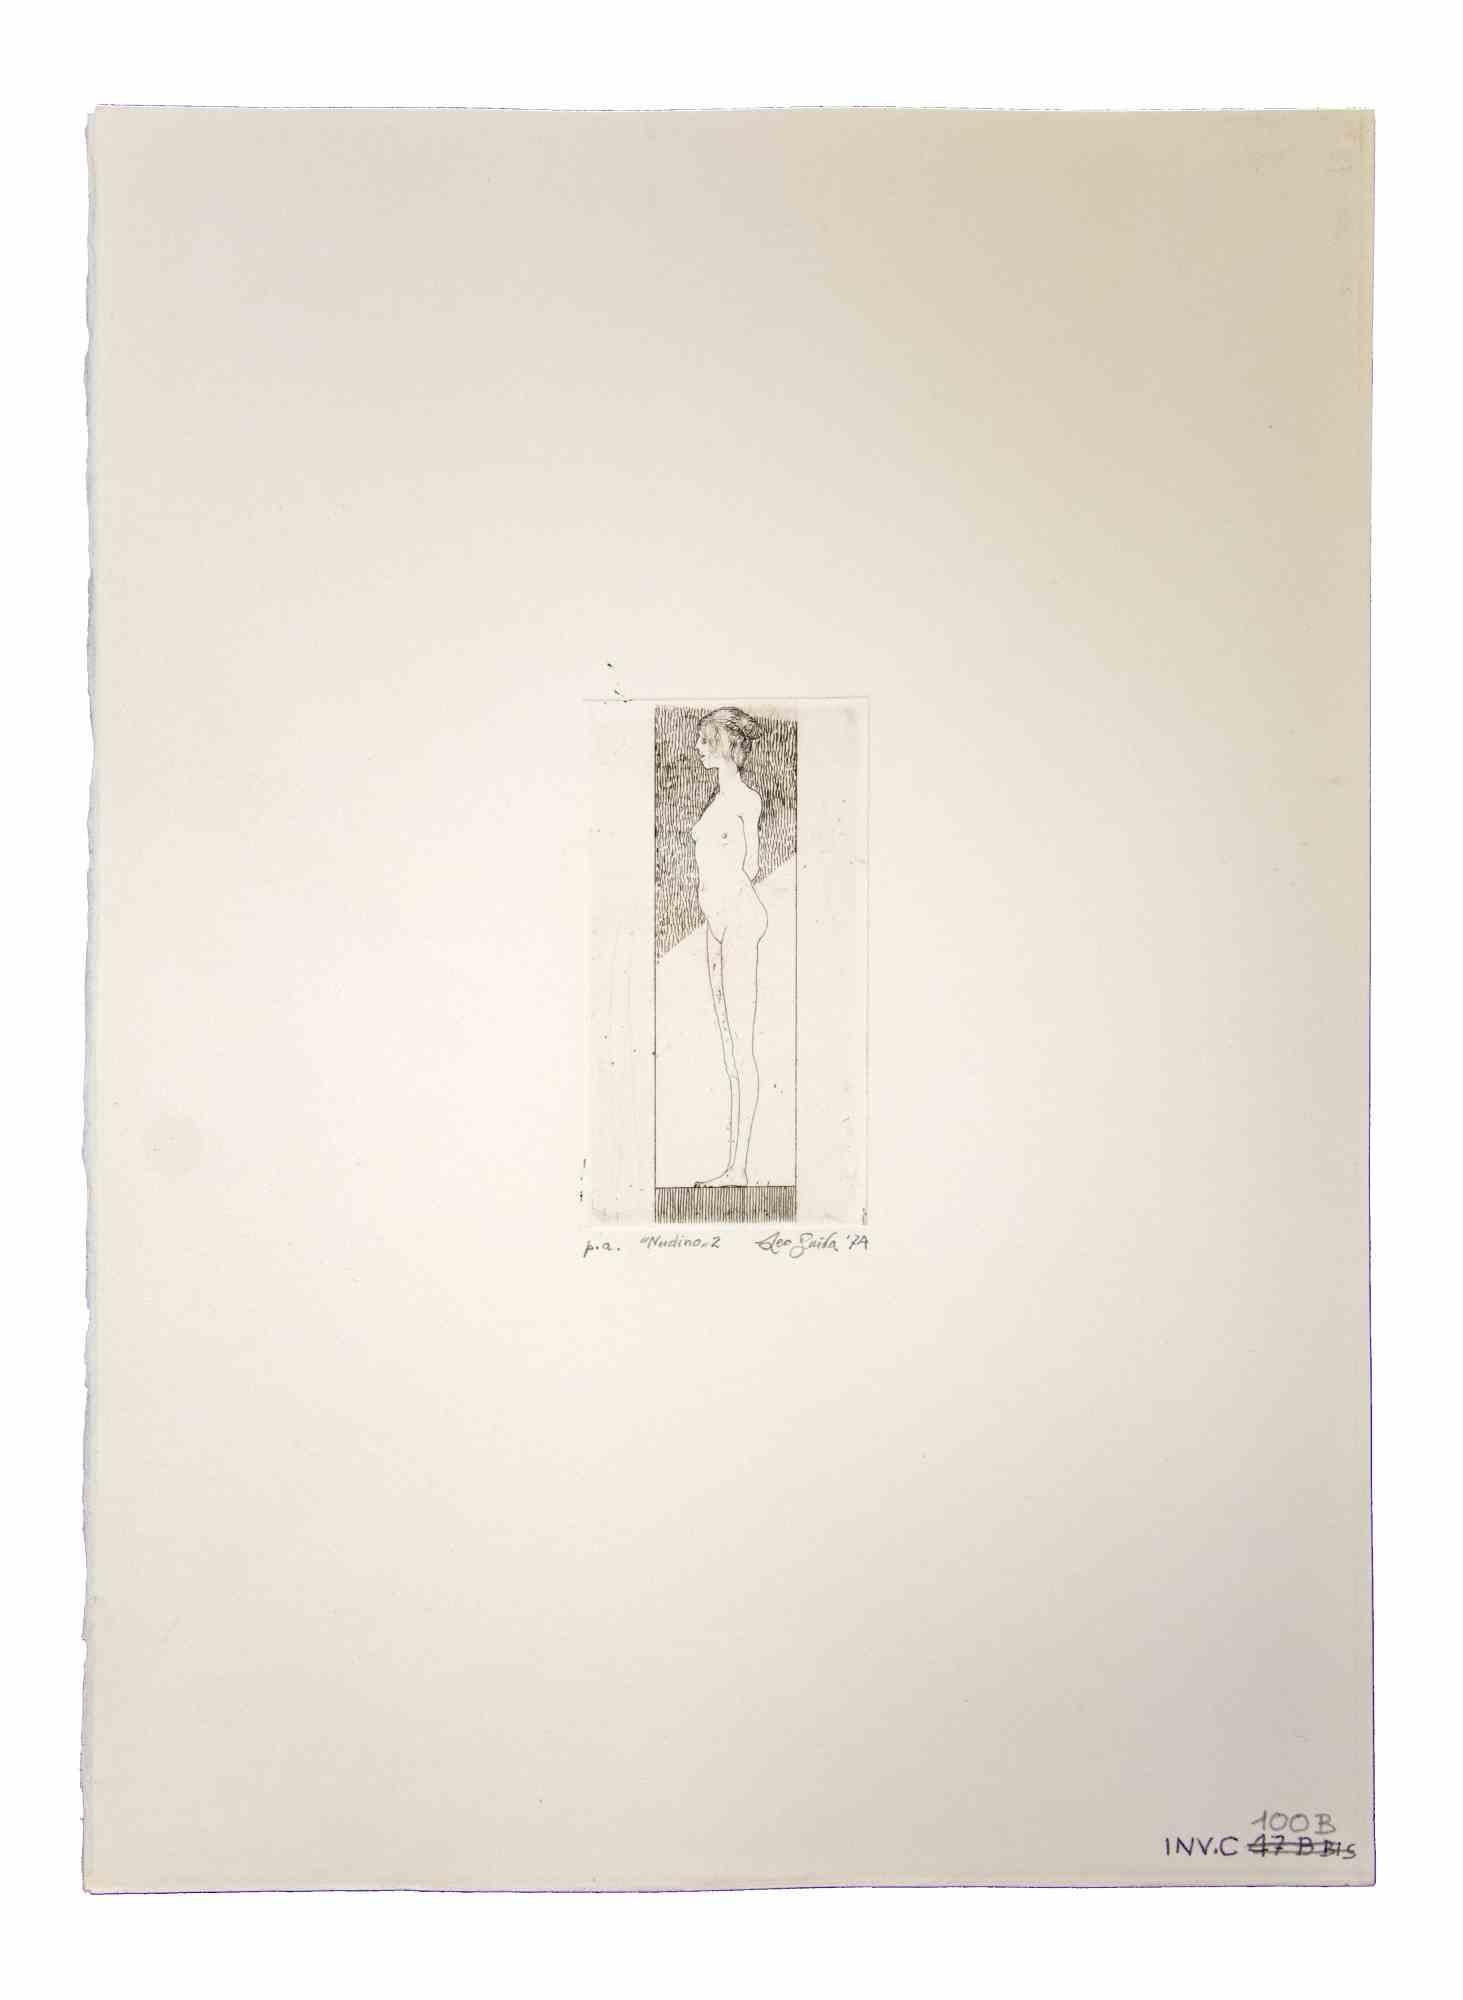 Nudino ist ein Originalkunstwerk, das 1974 von dem italienischen zeitgenössischen Künstler  Leo Guida  (1992 - 2017).

Original-Radierung auf Papier

Rechts unten mit Bleistift handsigniert und datiert.

Probedruck des Künstlers, links unten. Unten